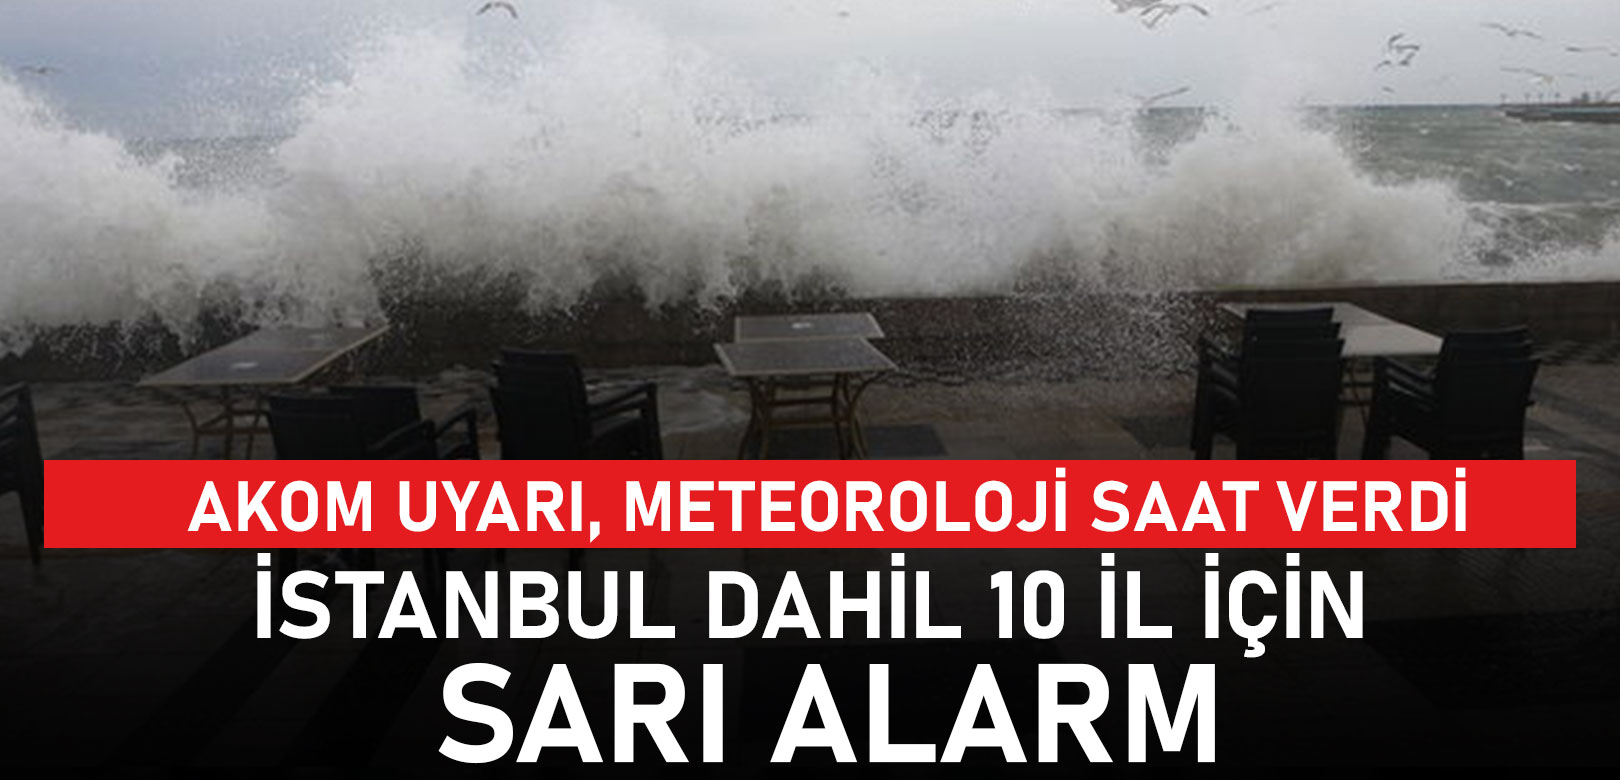 Meteoroloji'den İstanbul dahil 10 il için sarı kodlu uyarı, saat verildi